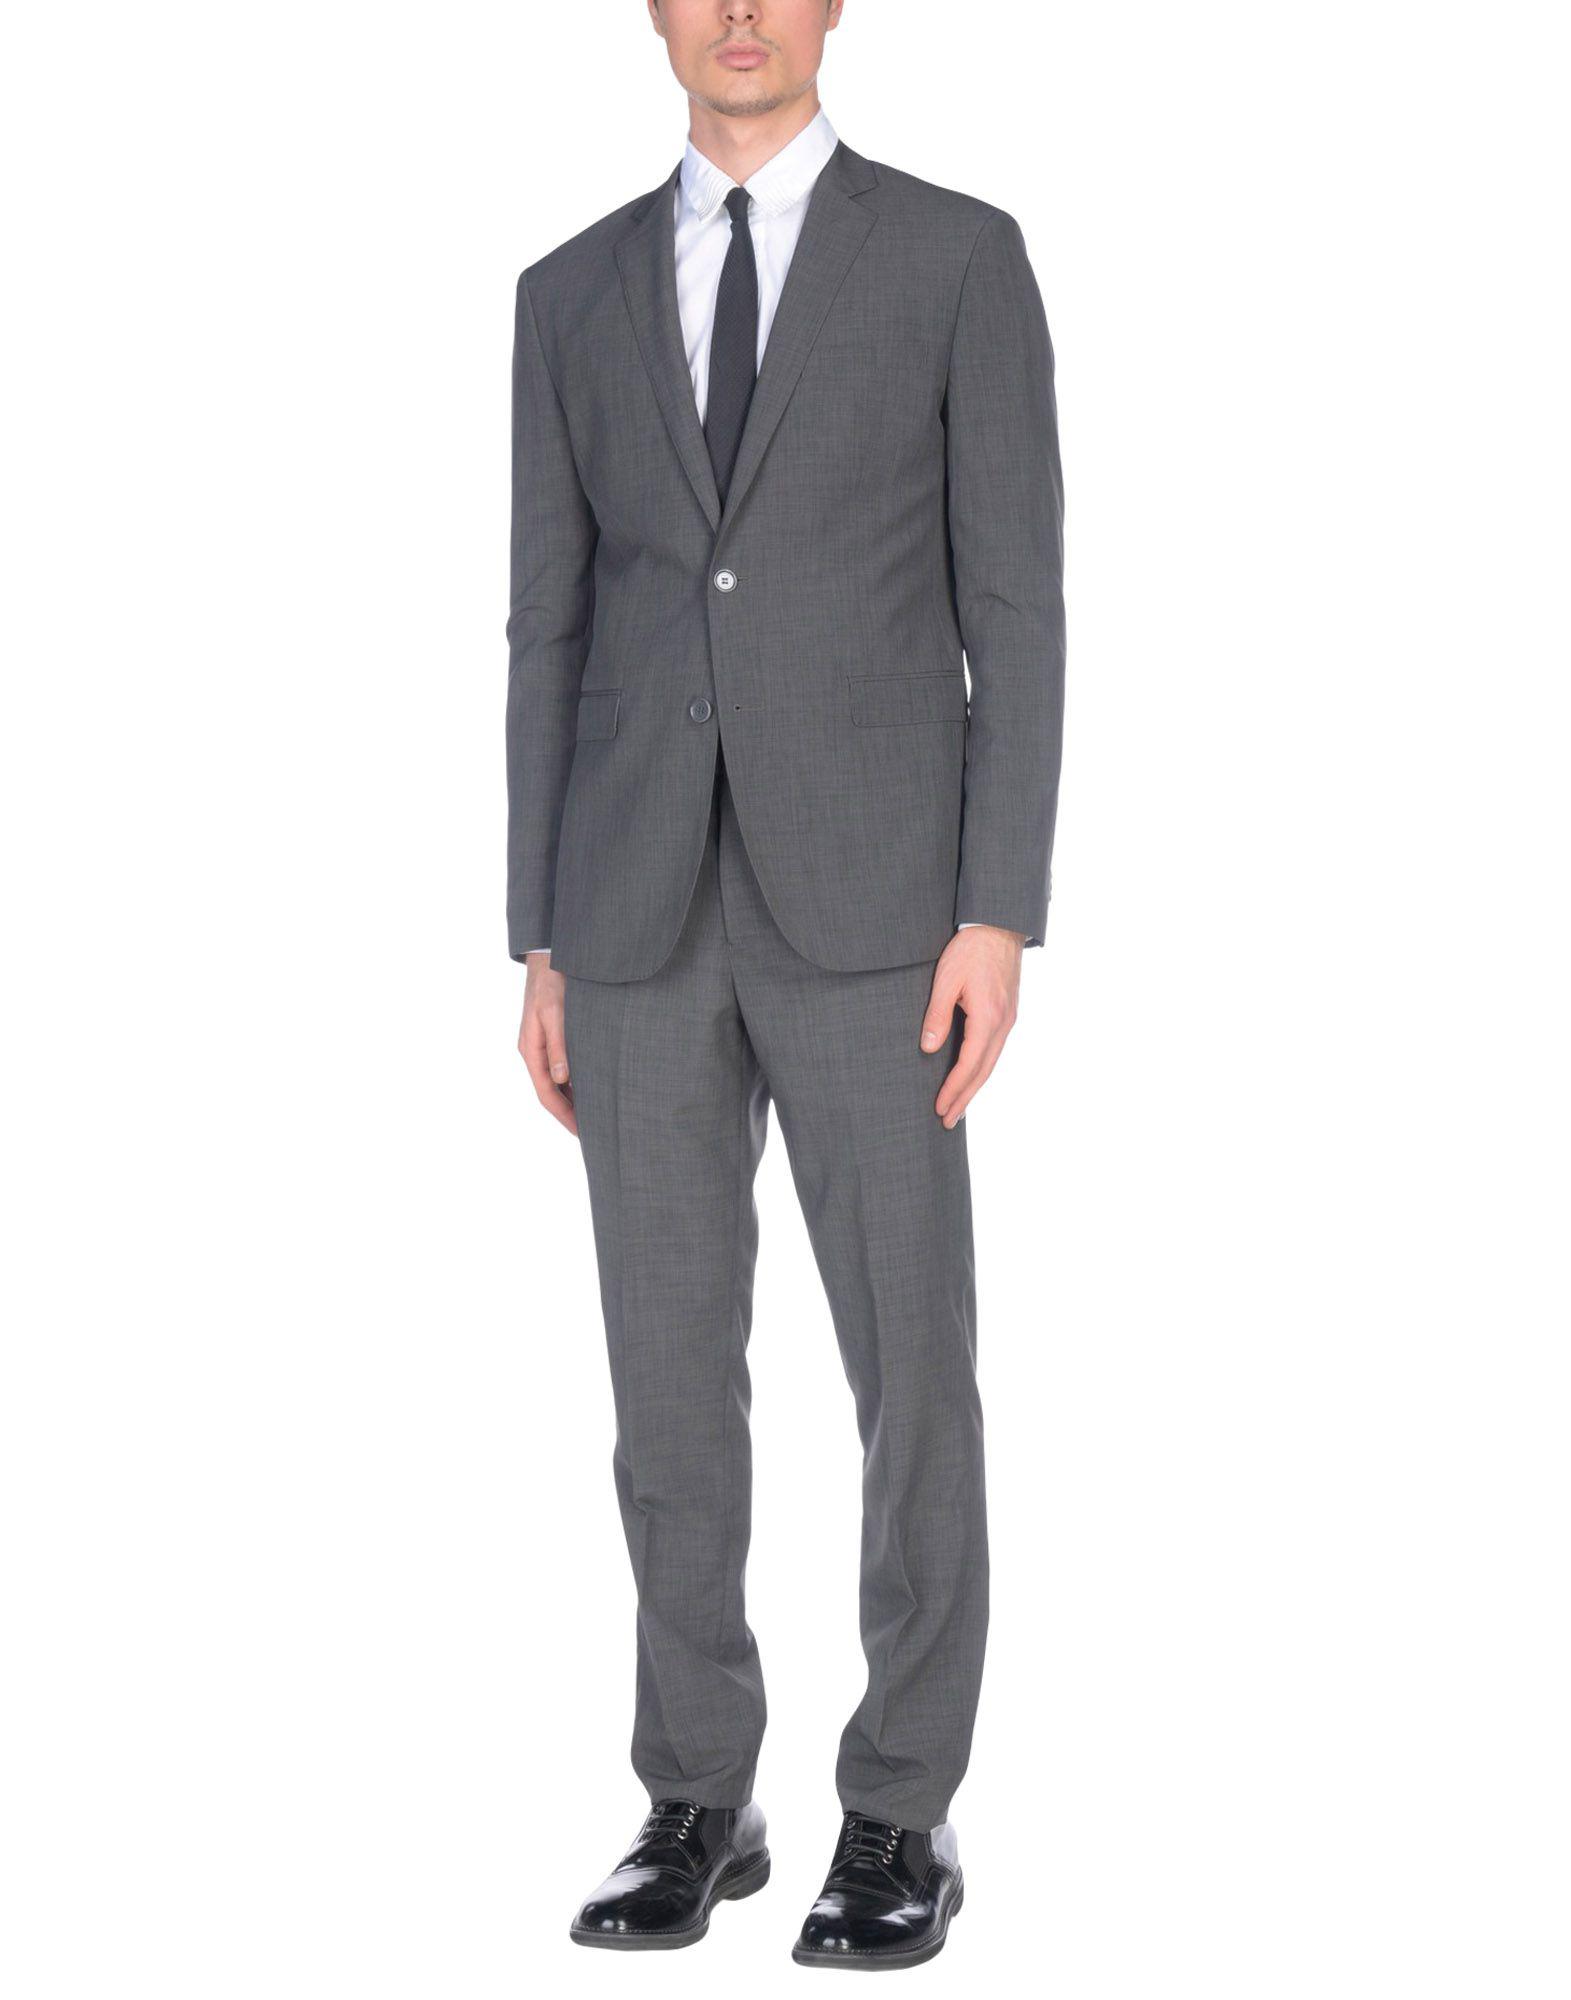 Trussardi Wool Suit in Lead (Gray) for Men - Lyst